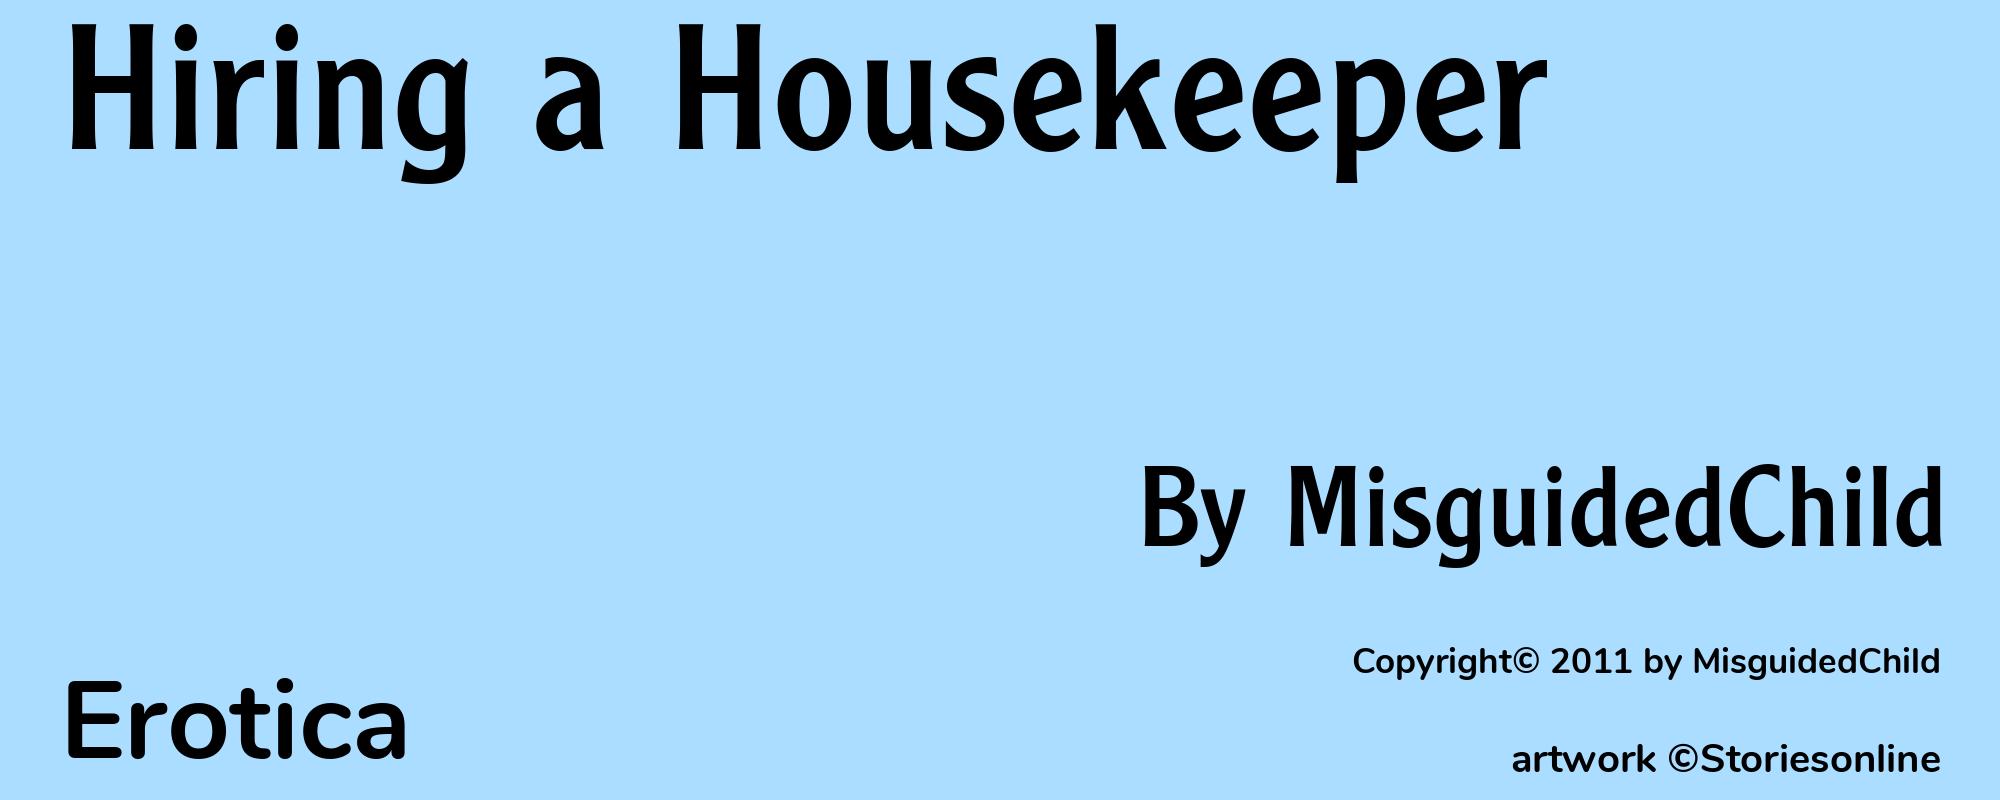 Hiring a Housekeeper - Cover